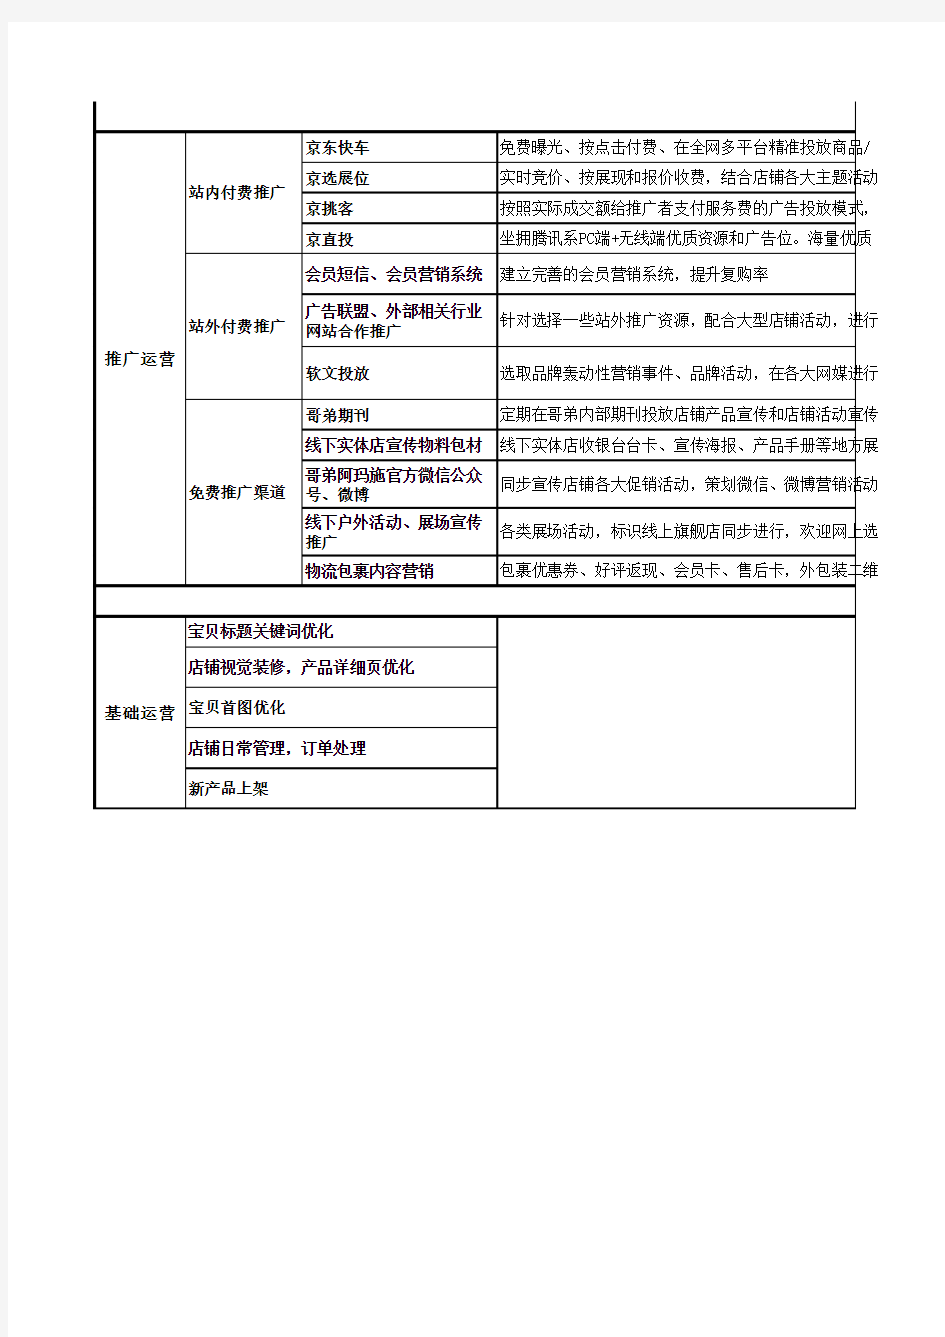 06、京东(2016年度)运营计划详细